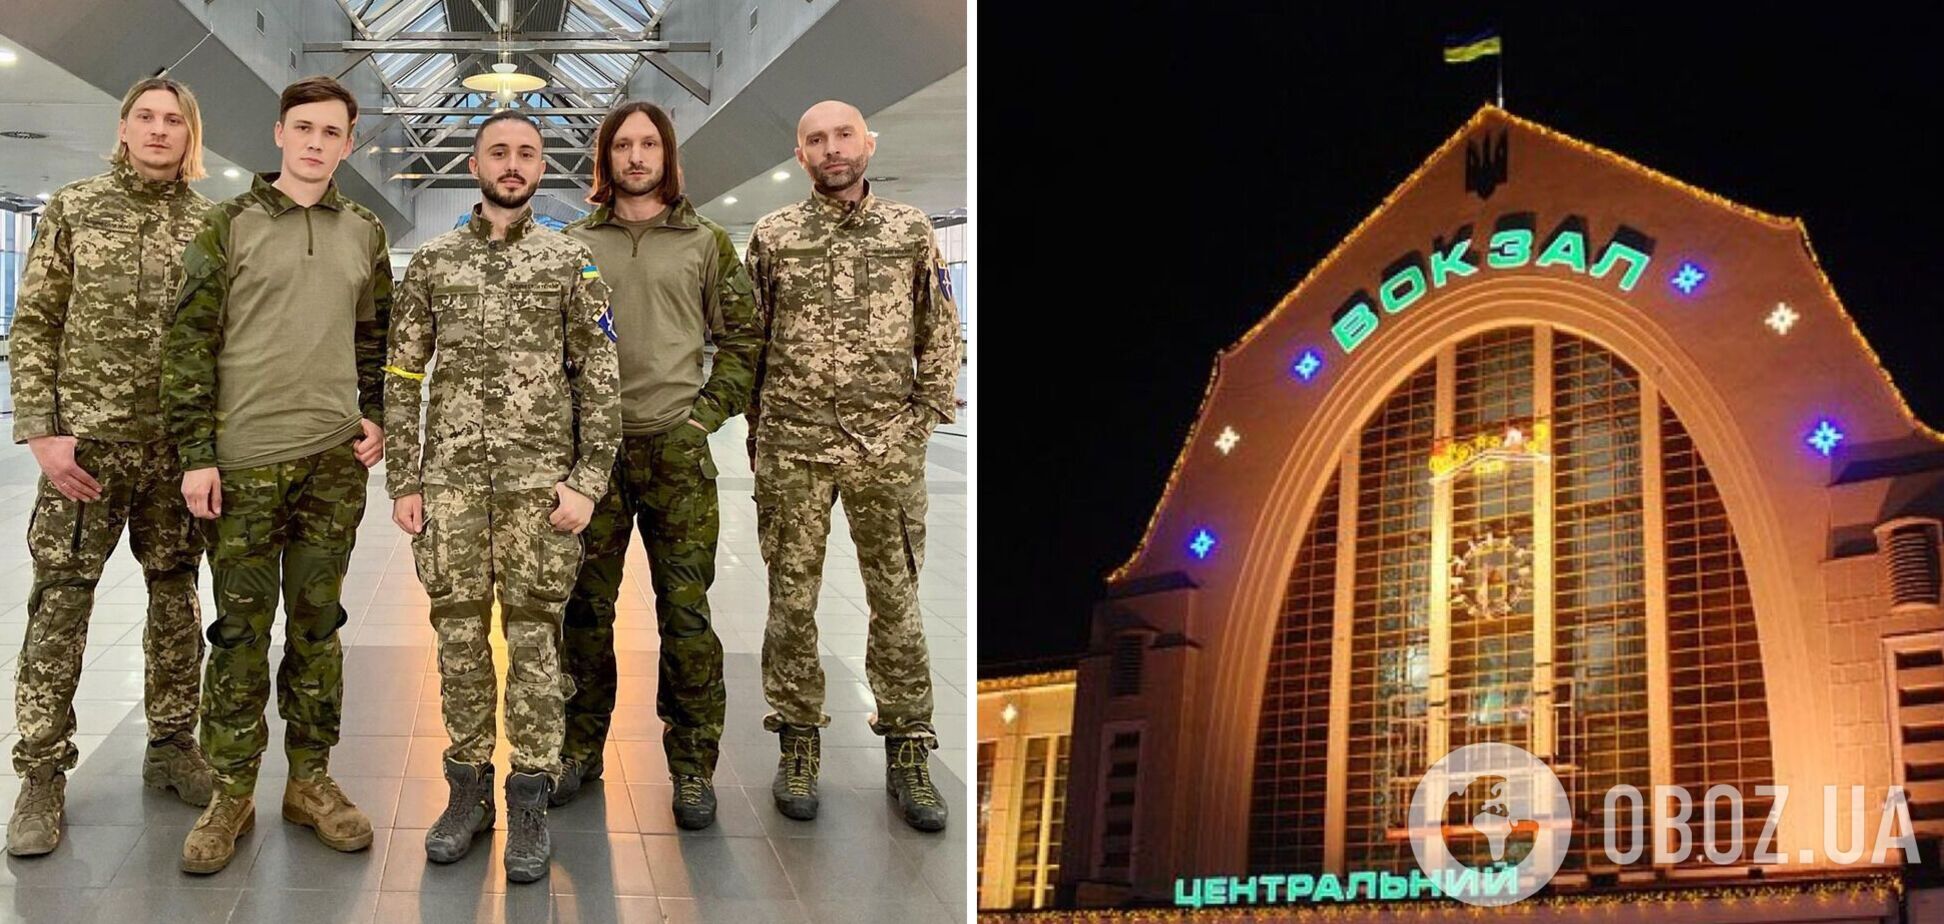 'Это крик души. Горжусь украинцами!' Группа 'Антитіла' спела на железнодорожном вокзале в Киеве и поразила сеть